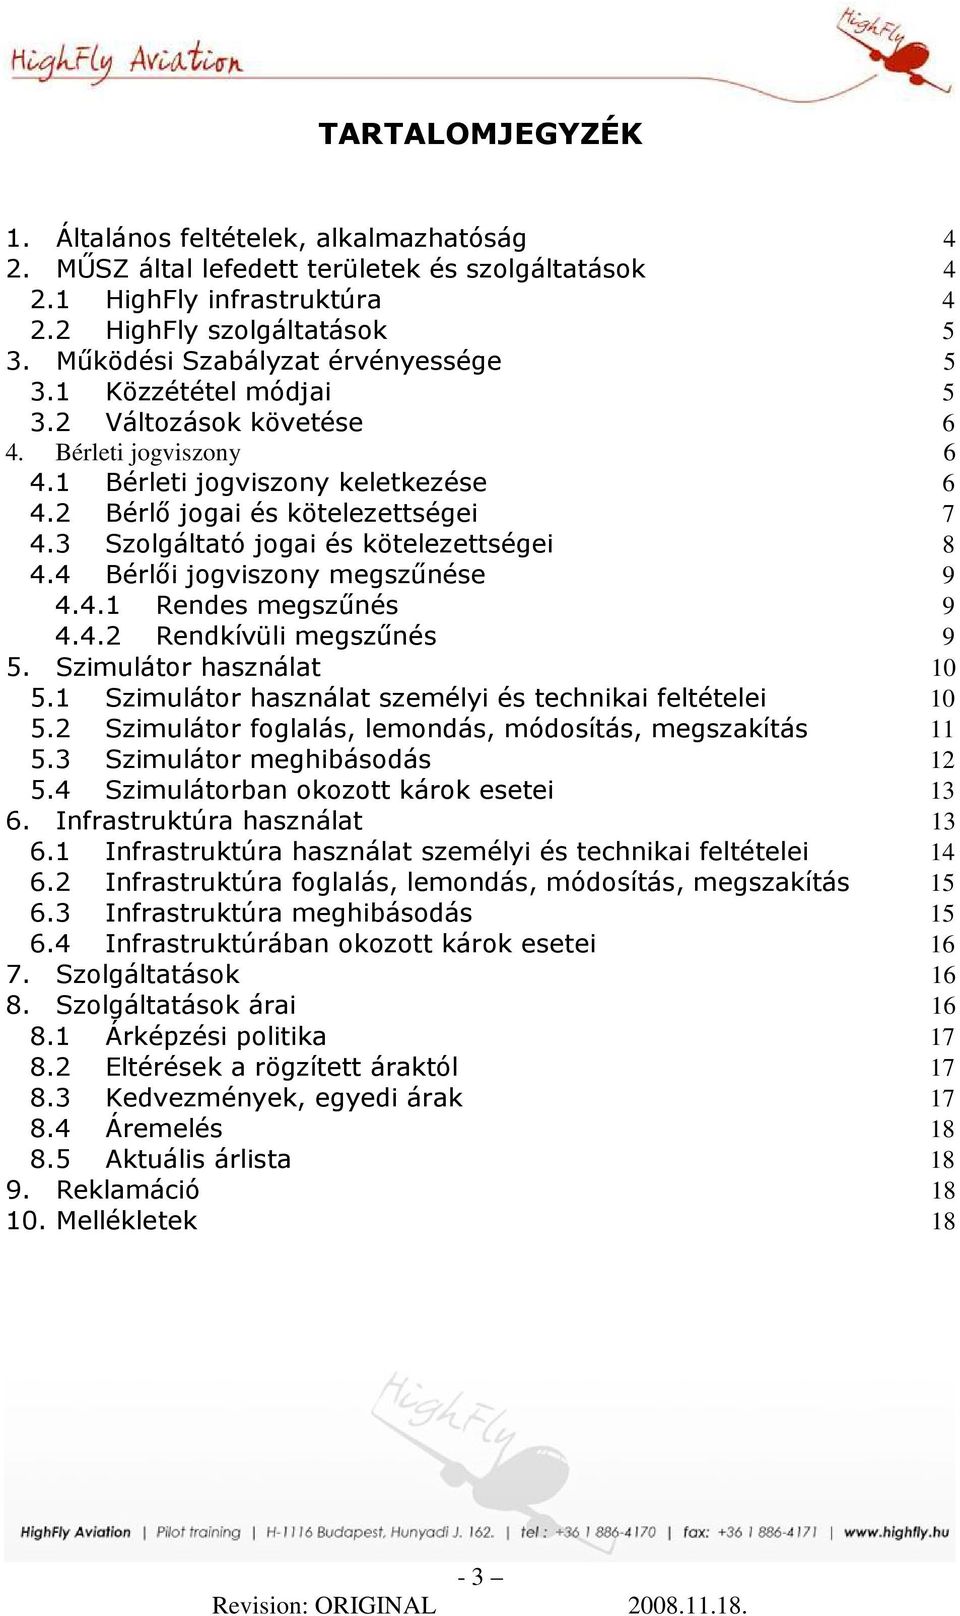 3 Szolgáltató jogai és kötelezettségei 8 4.4 Bérlıi jogviszony megszőnése 9 4.4.1 Rendes megszőnés 9 4.4.2 Rendkívüli megszőnés 9 5. Szimulátor használat 10 5.